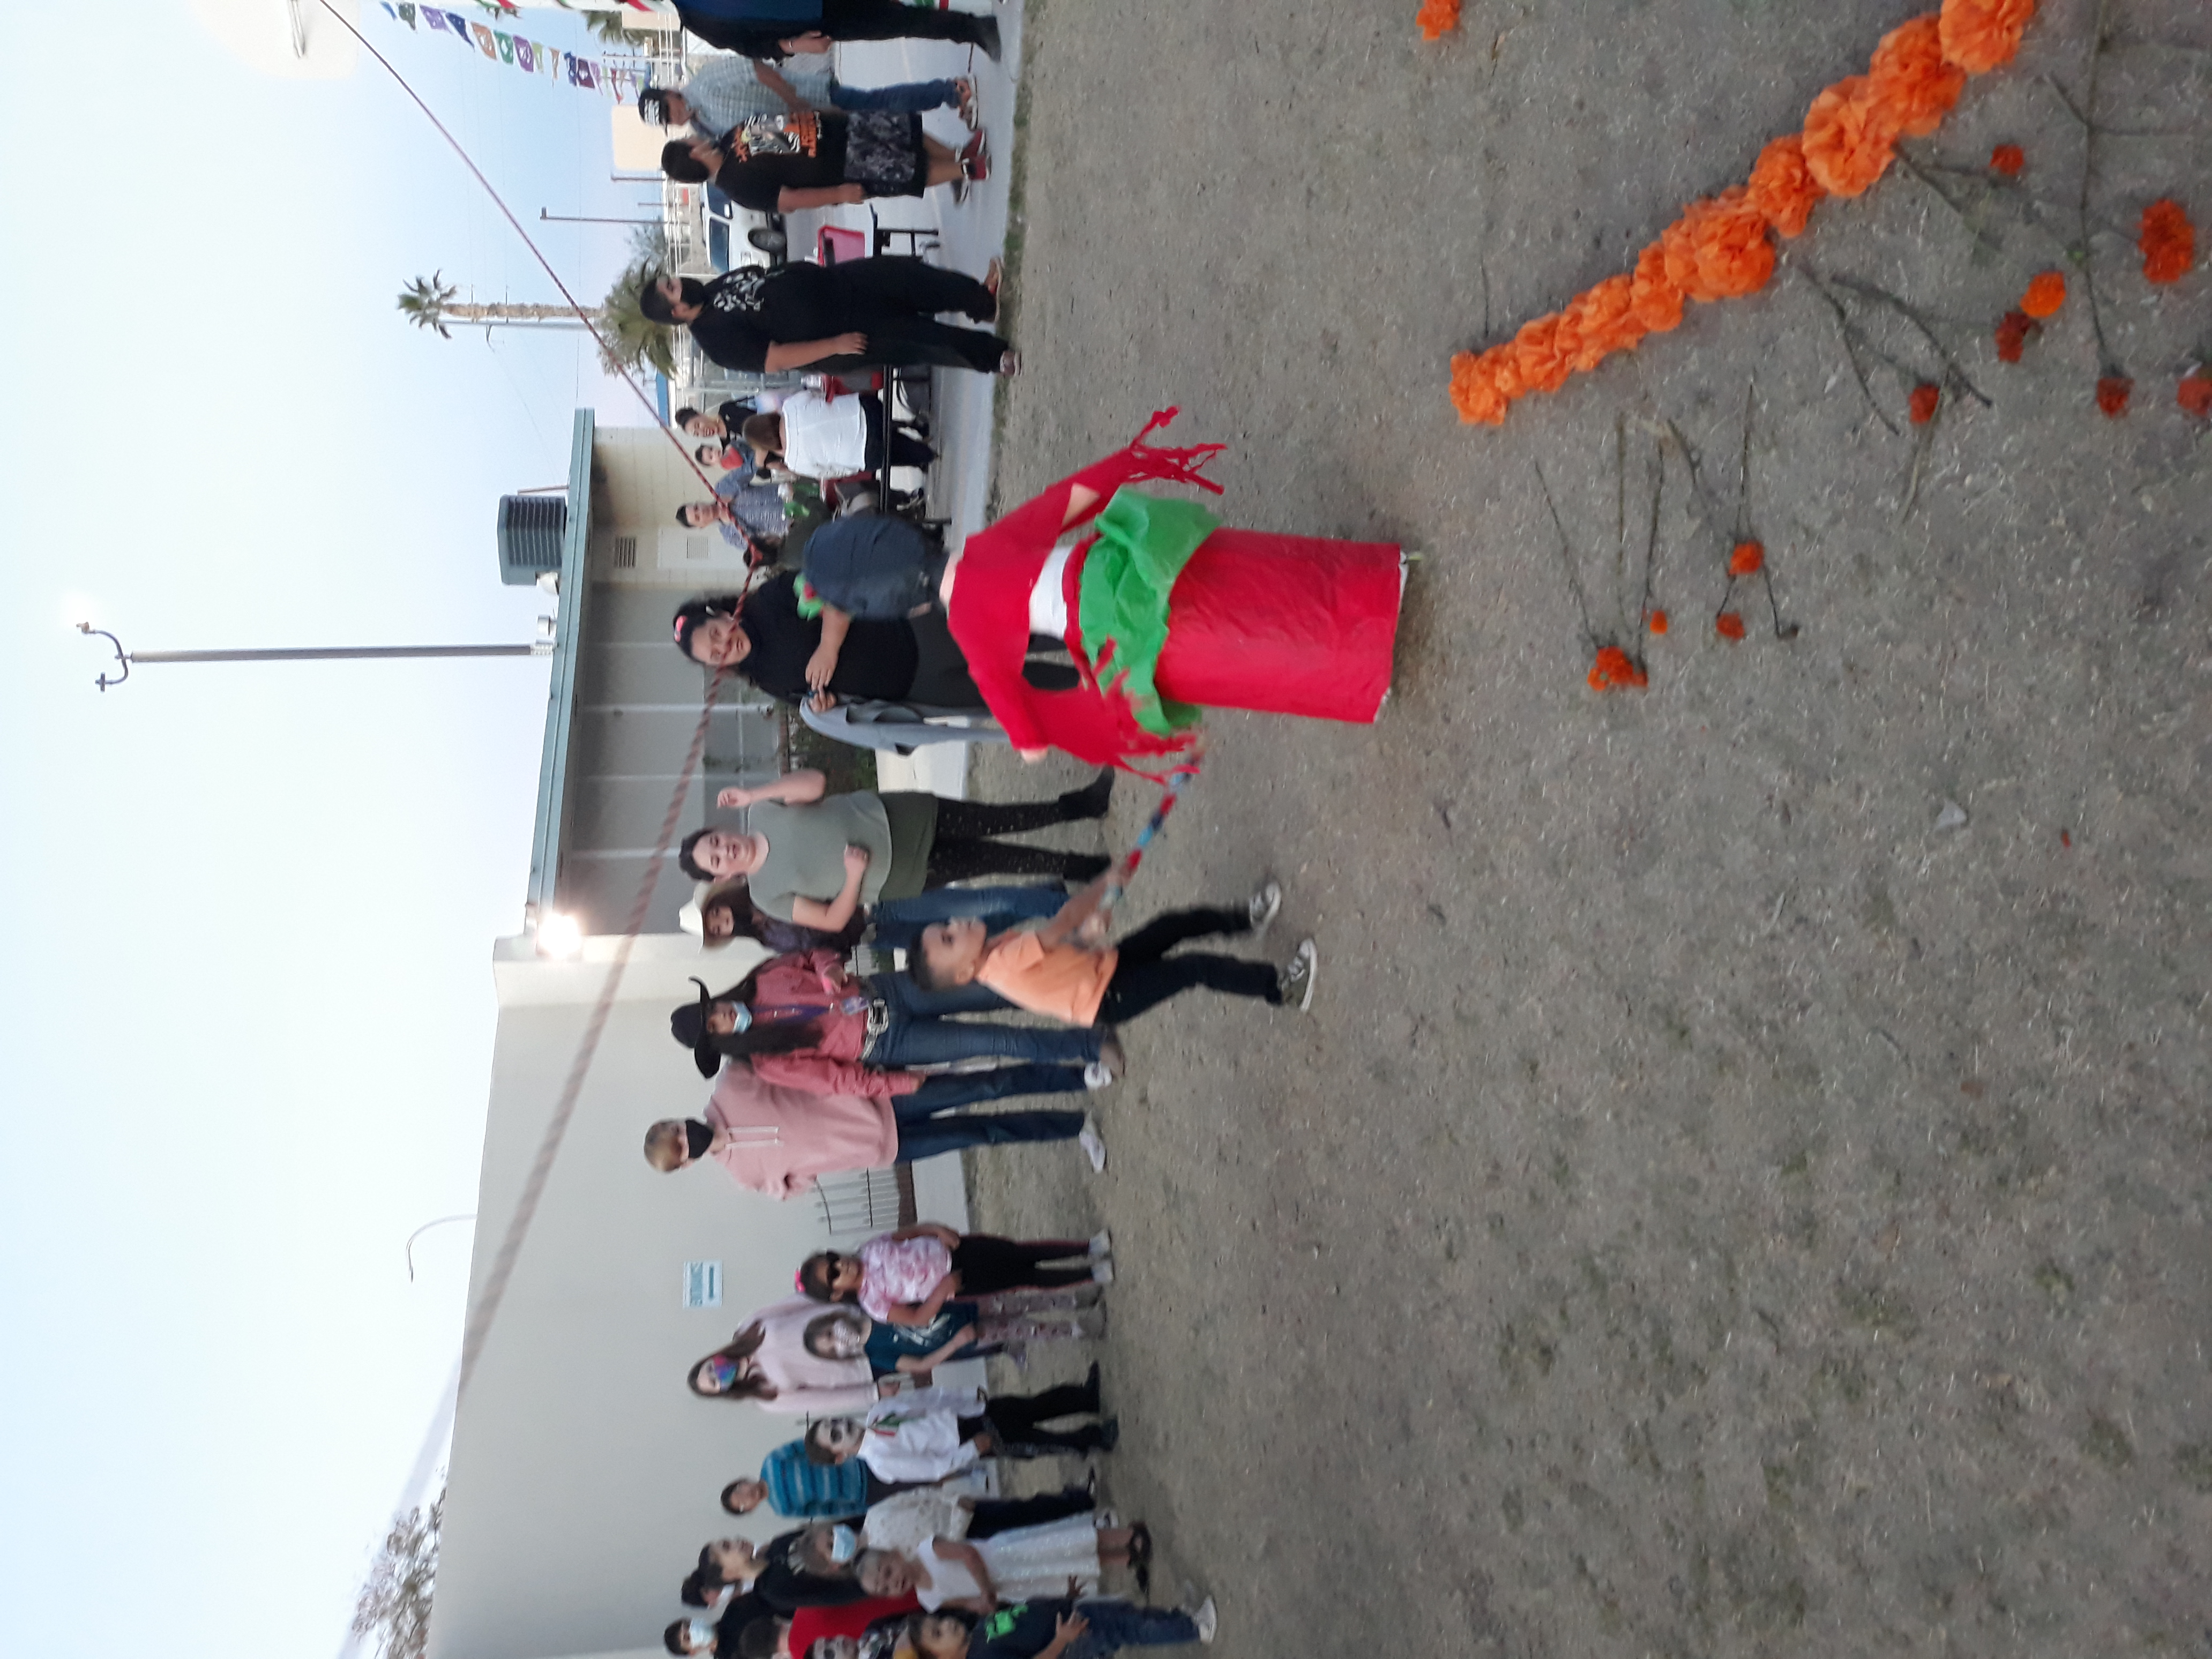 Piñata Fun at Pachanga en Celebración de Día de los Muertos